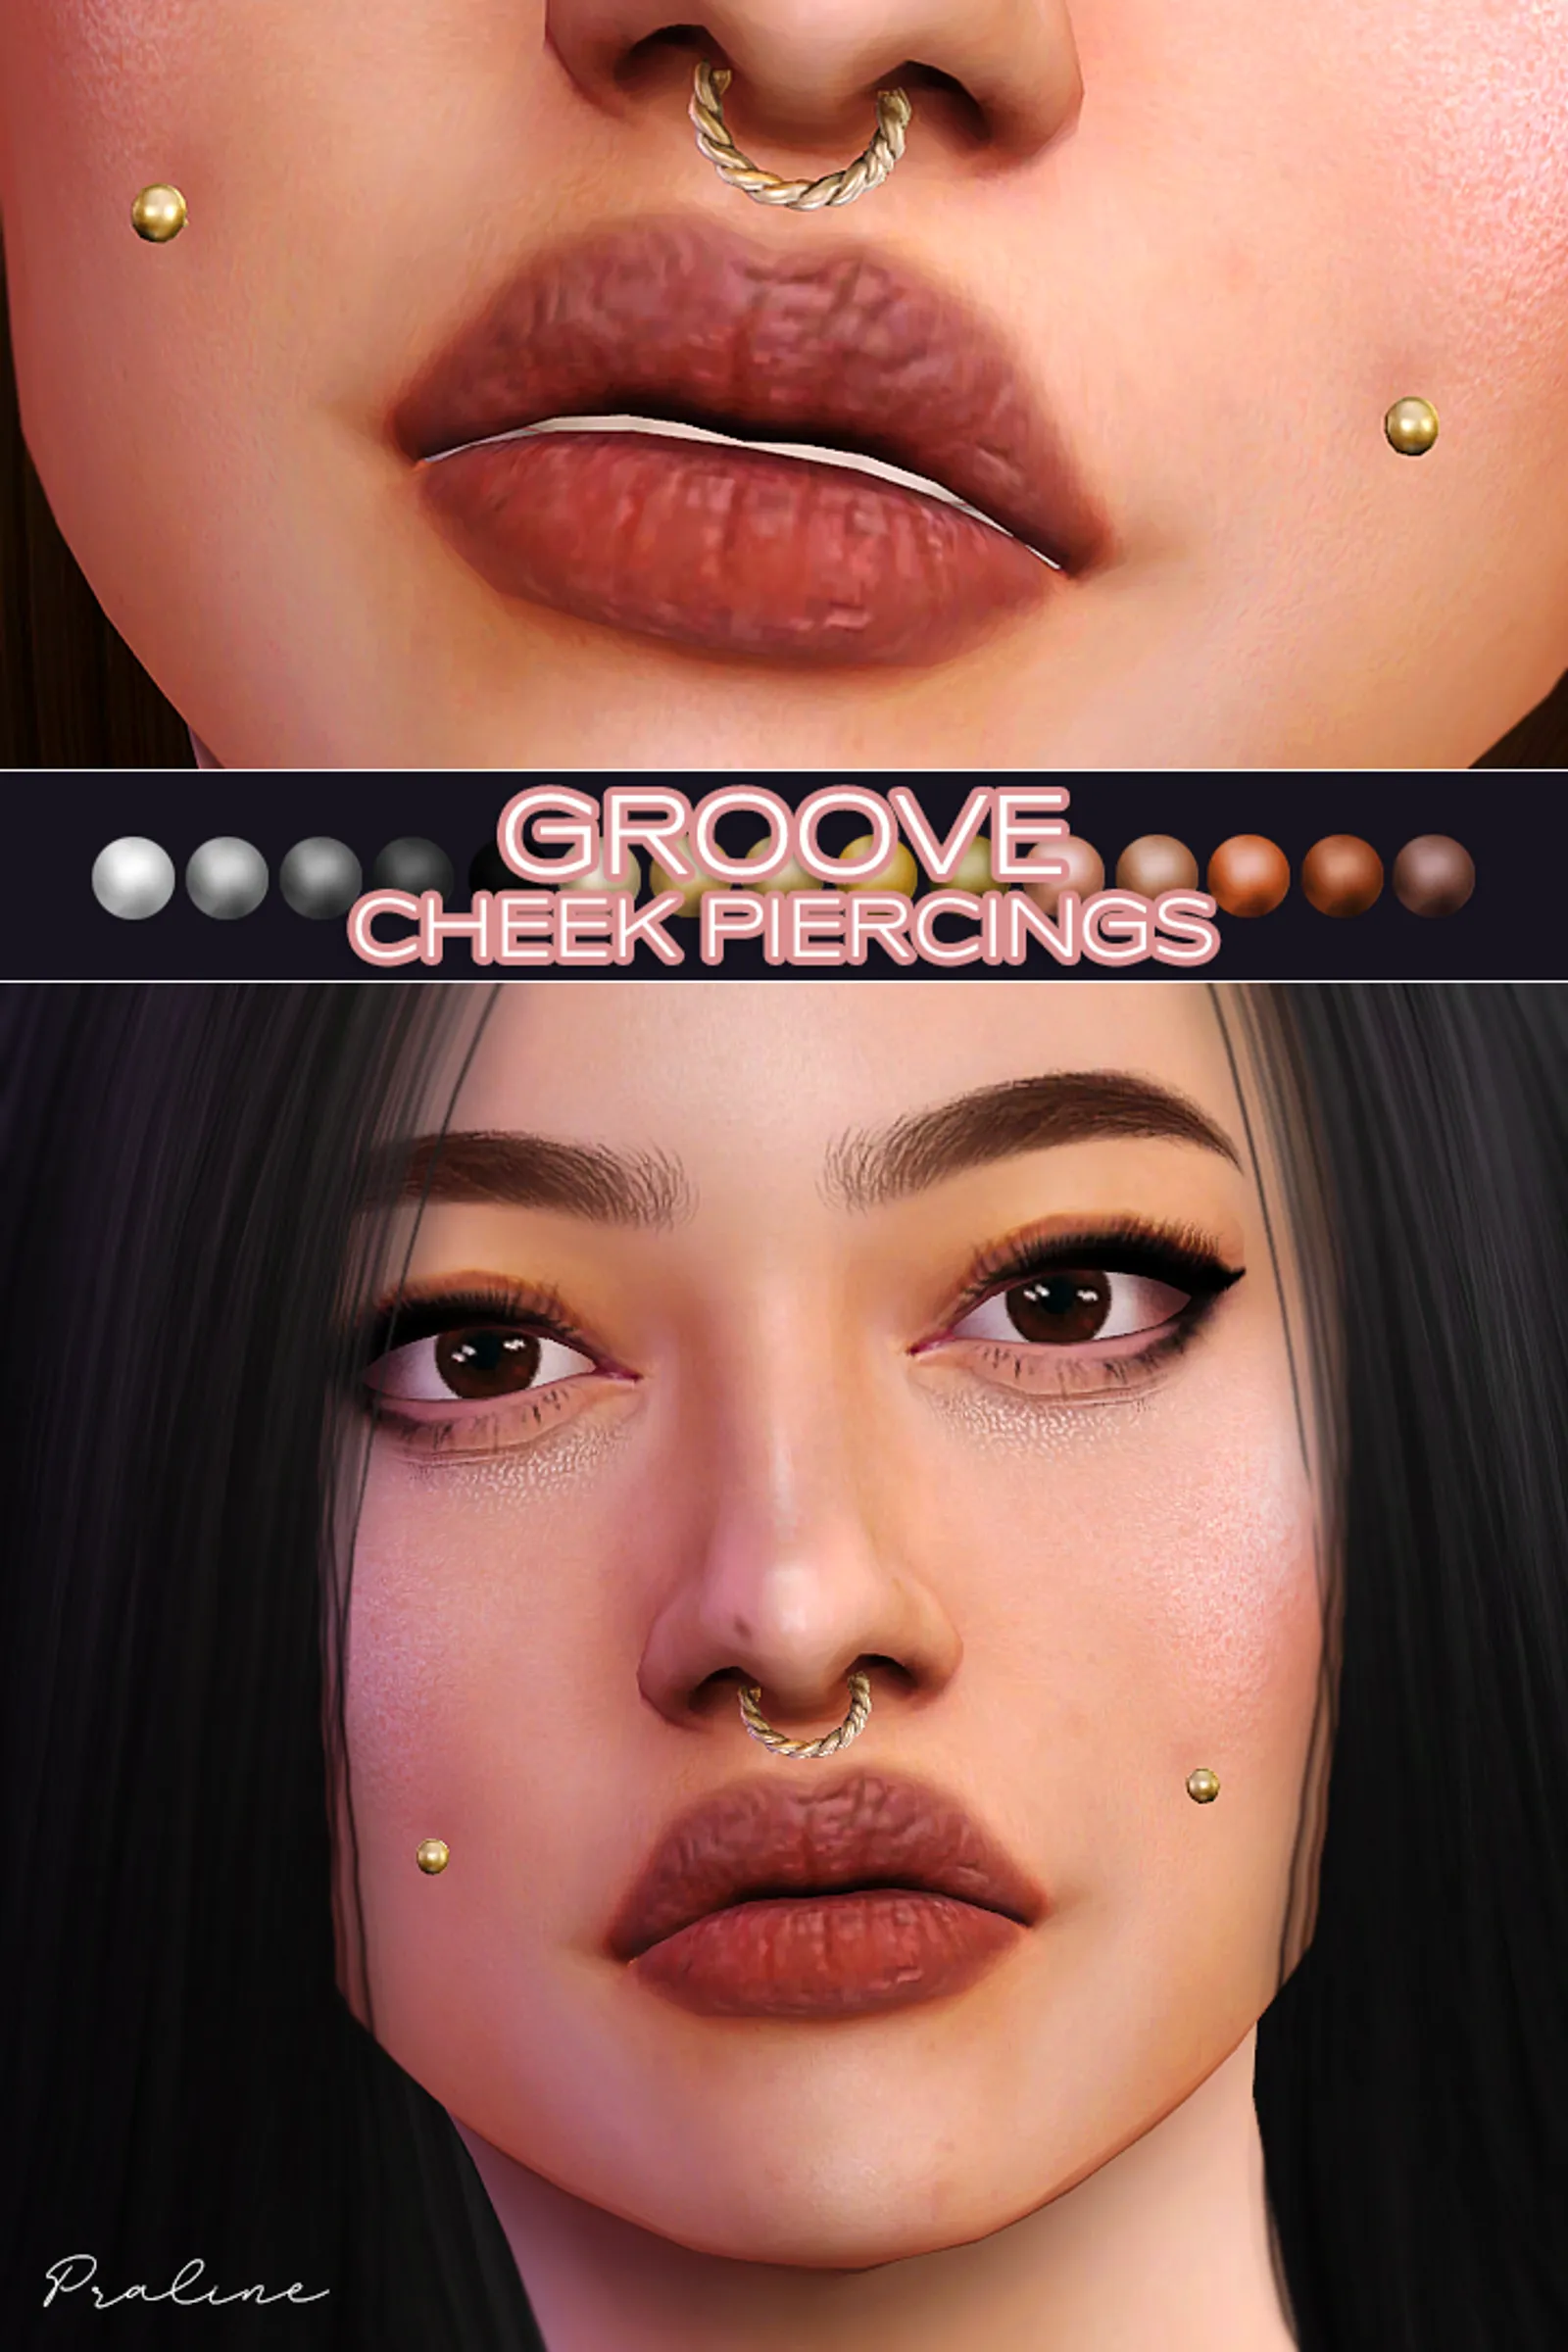 GROOVE Cheek Piercings